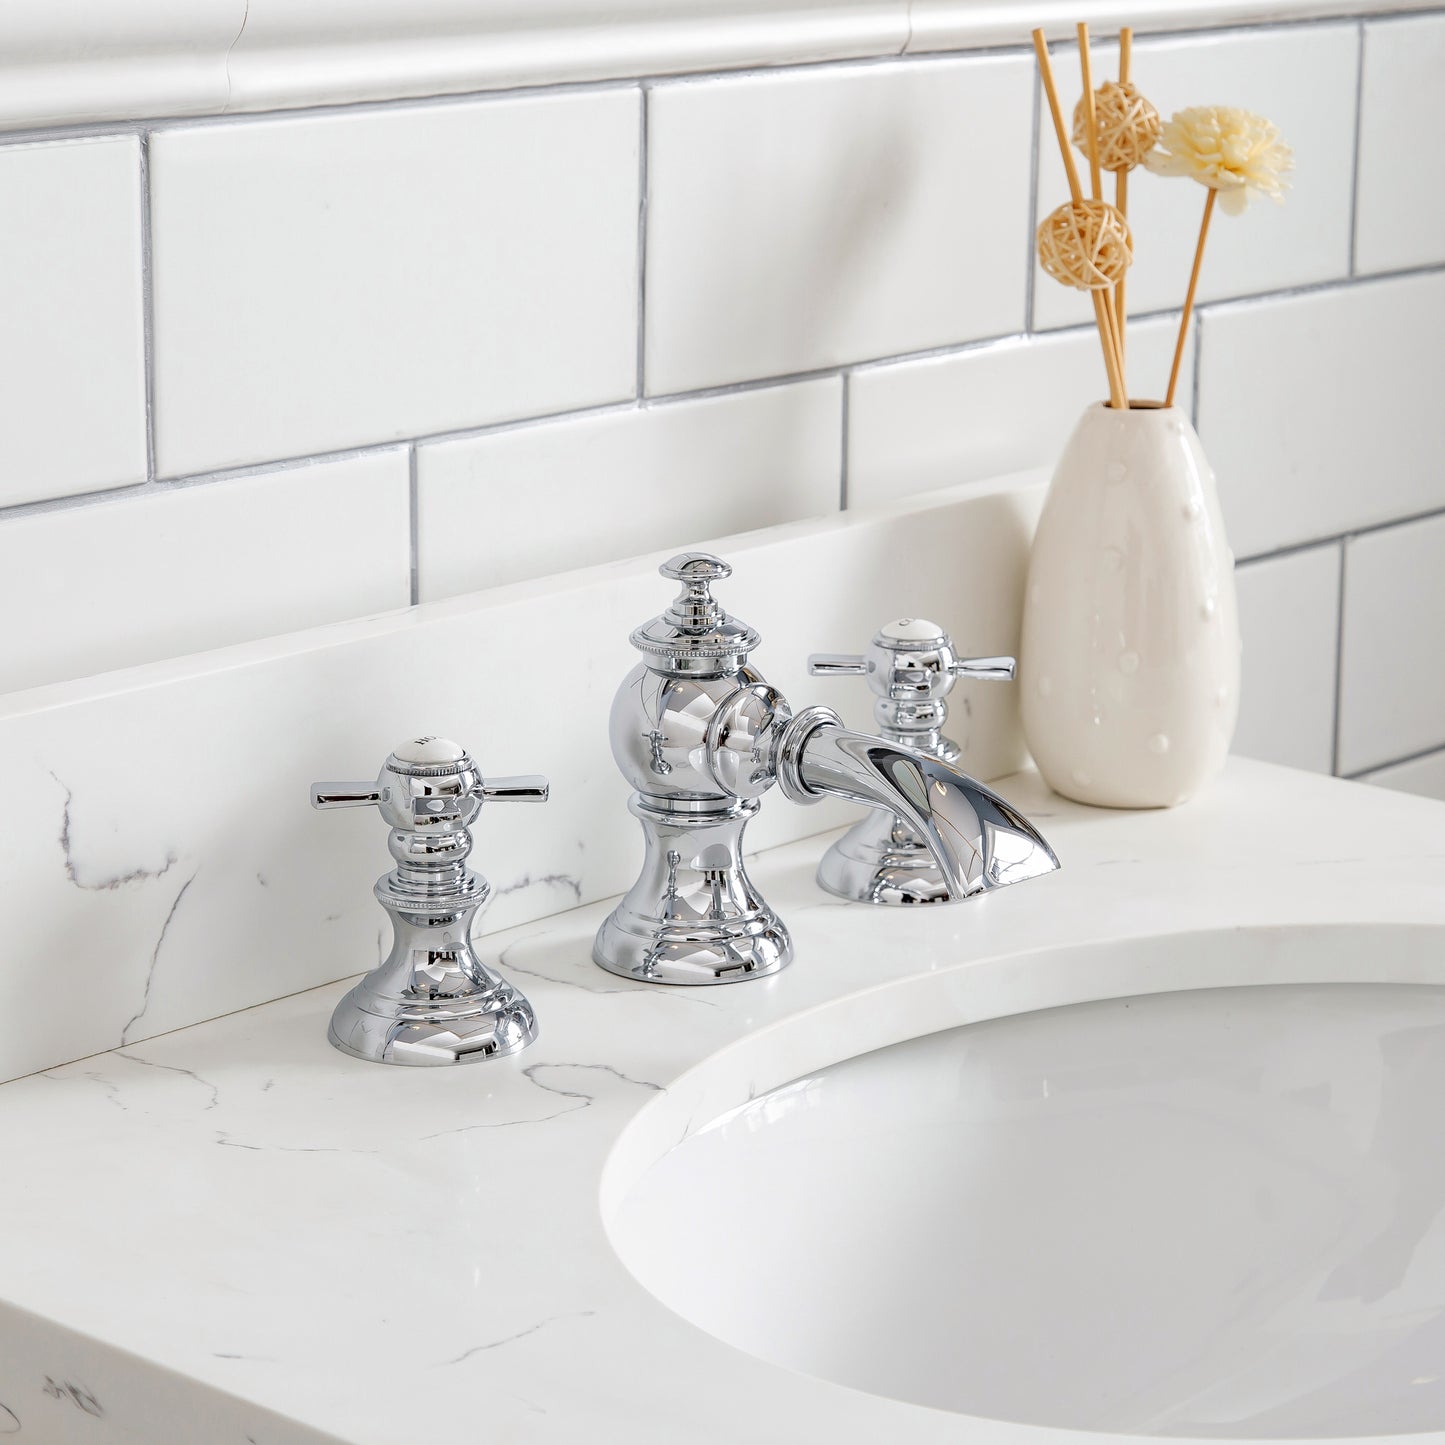 Water Creation Queen 24" Inch Single Sink Quartz Carrara Vanity with Lavatory Faucet - Luxe Bathroom Vanities